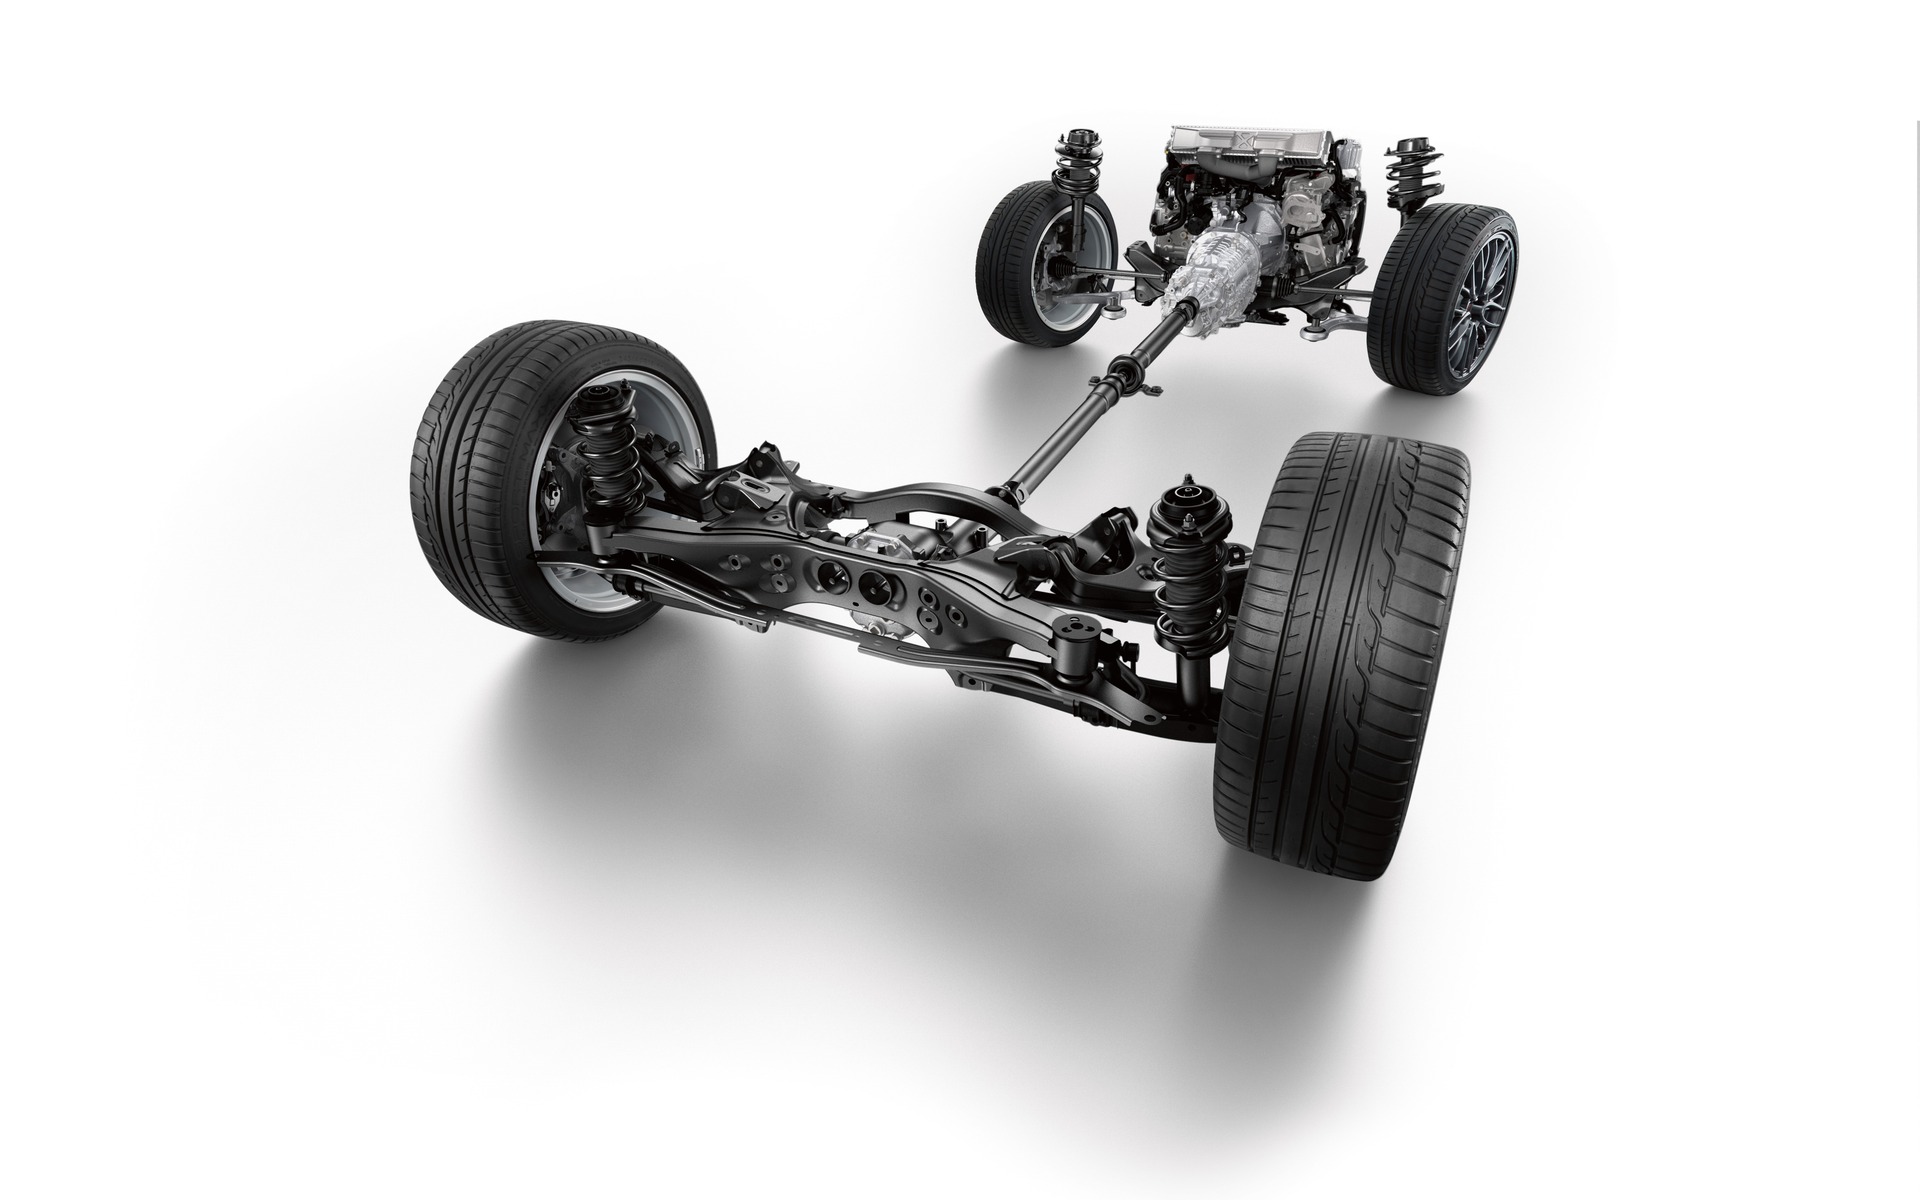 Le rouage inéral, les suspensions et le moteur à plat de la WRX mis à nu